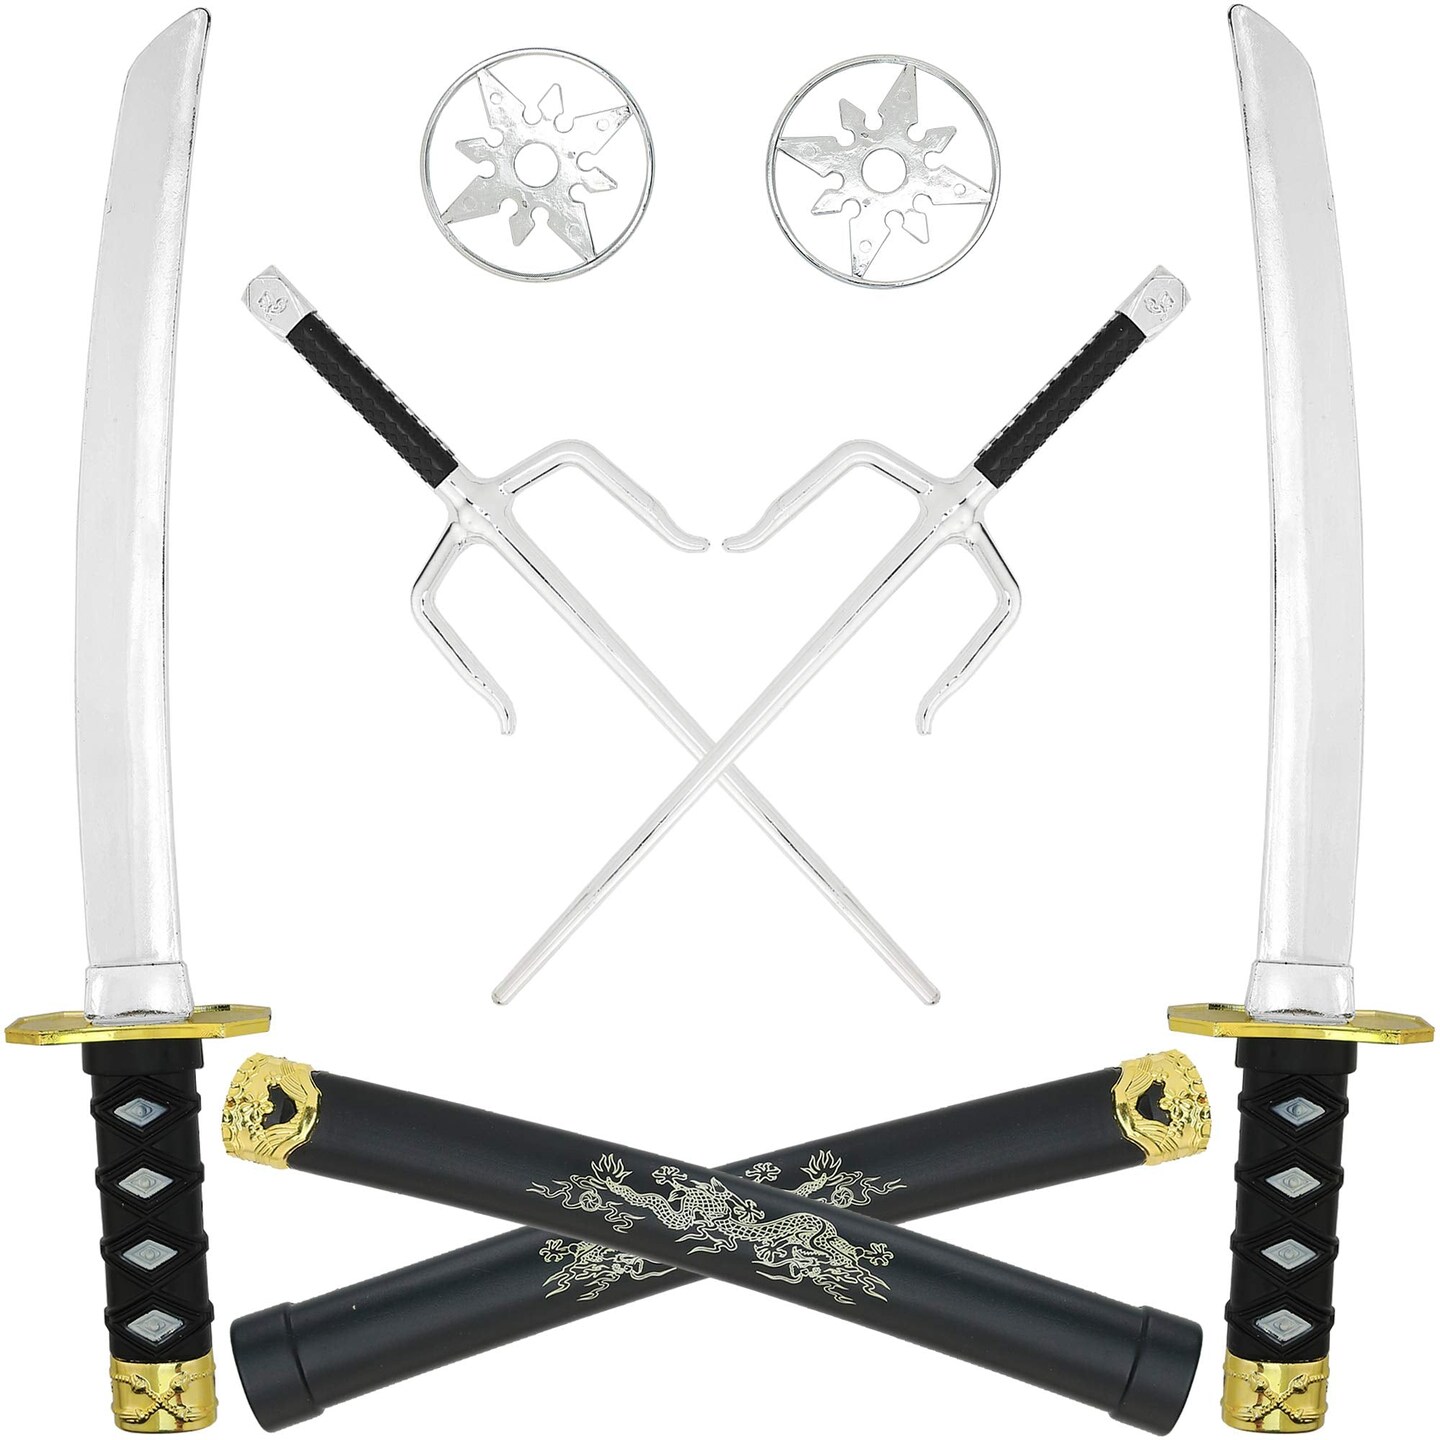 Ninja Set, Special Samurai Sword, Ninja Swords, Nunchucks, Ninja Special  Toy Weapon And Equipment 